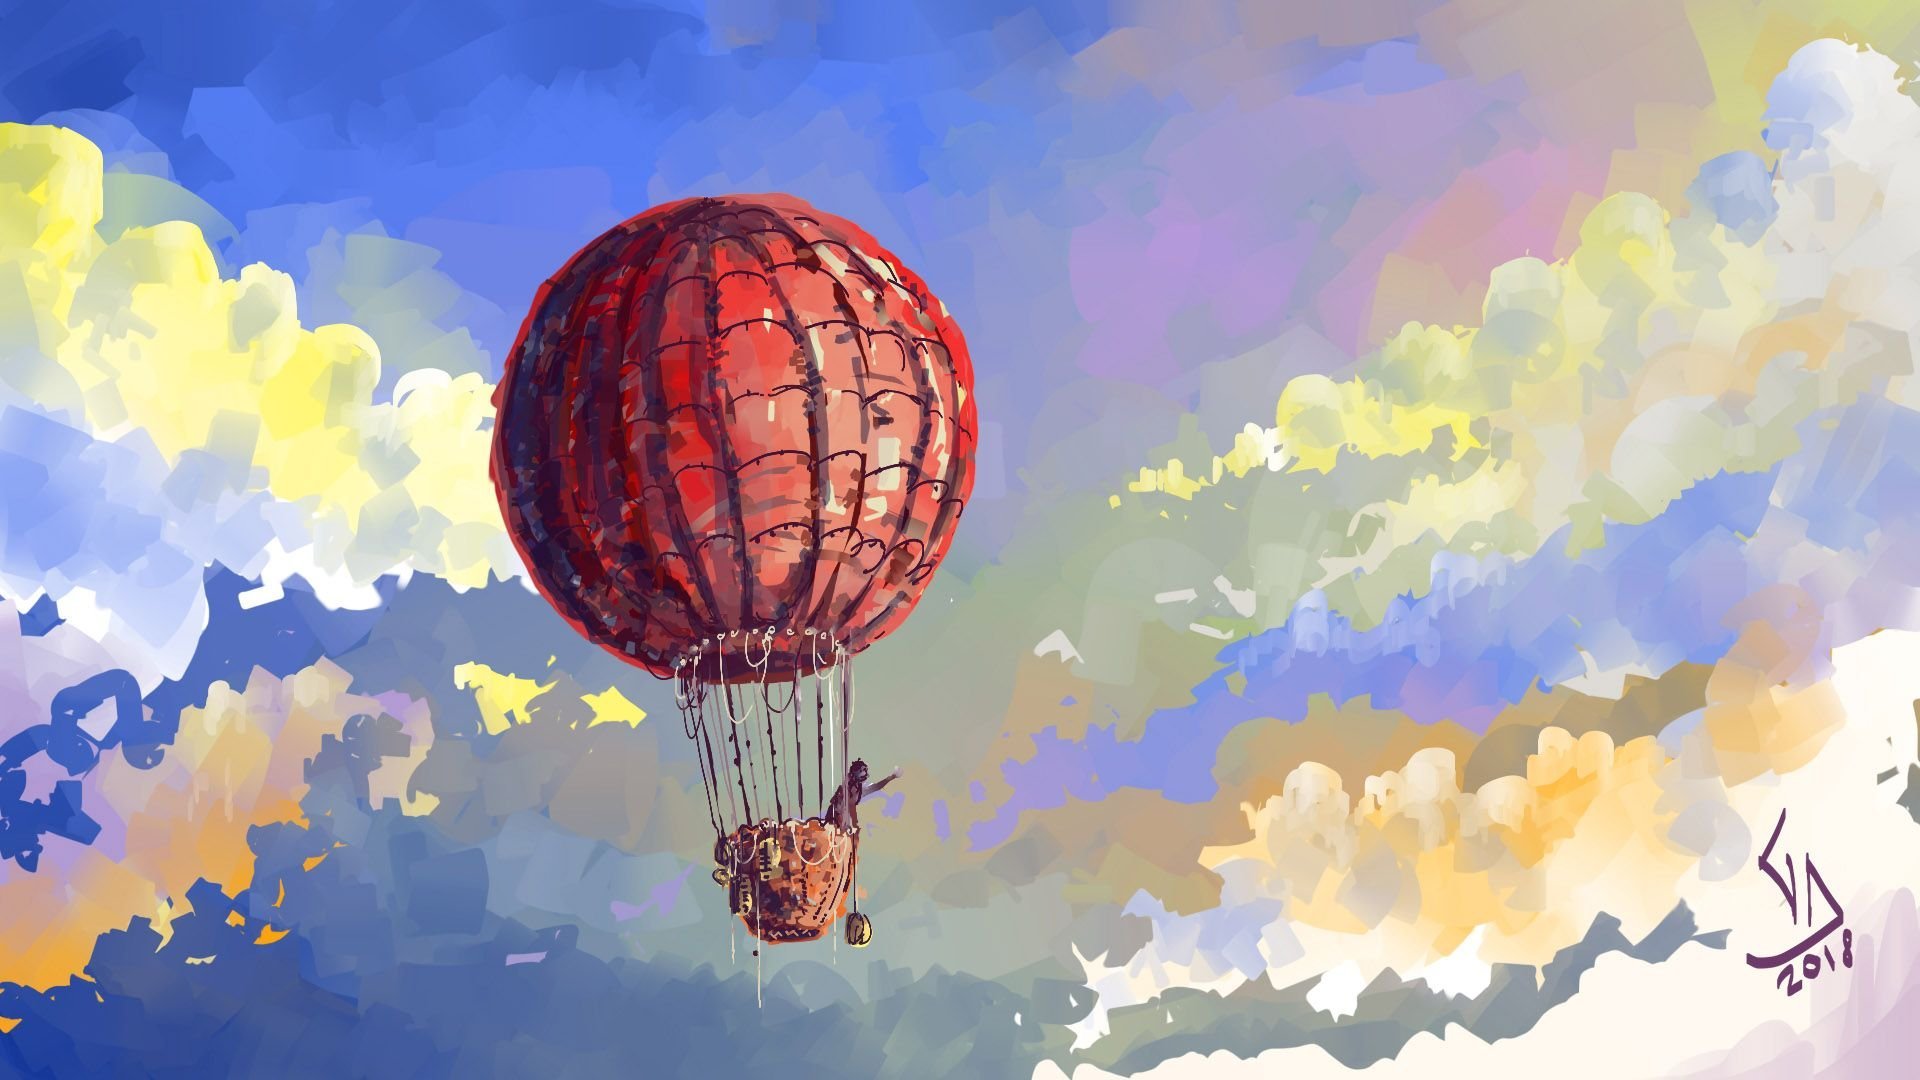 В страну знаний на воздушном шаре. Воздушный шар в небе. Воздушный шар арт. Пейзаж с воздушными шарами. Шар воздушный с рисунком.